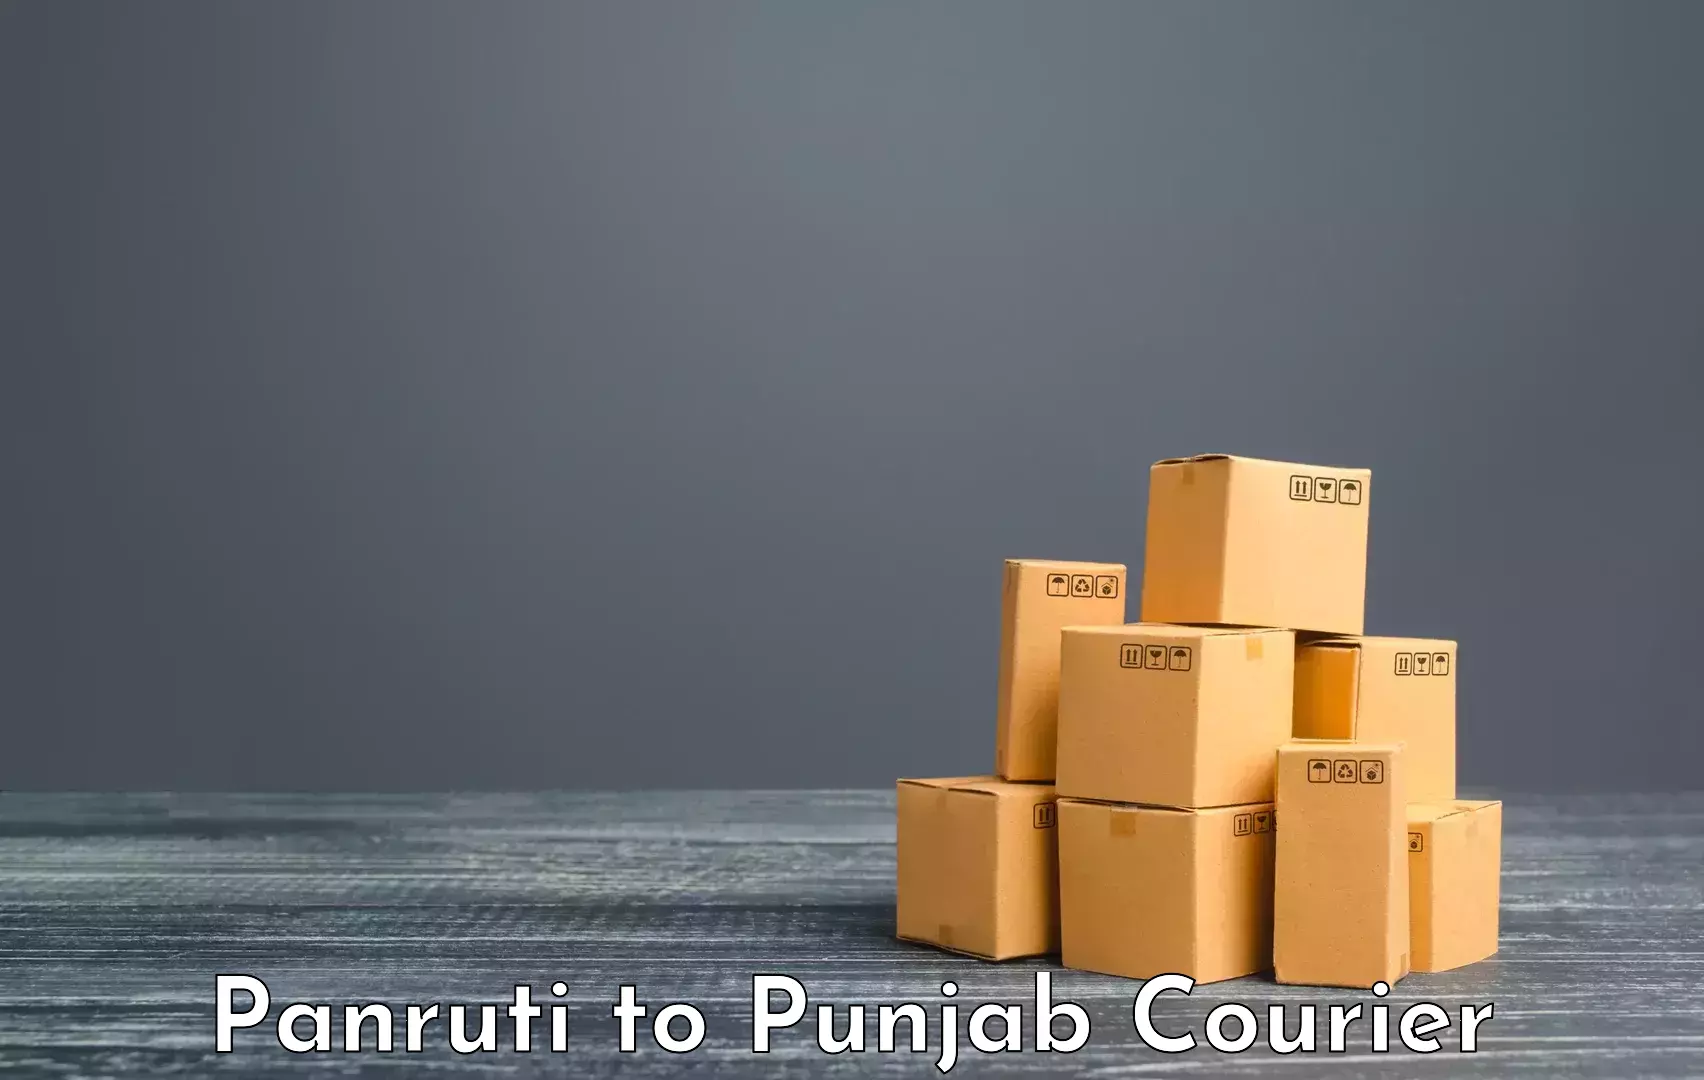 Excess baggage transport in Panruti to Punjab